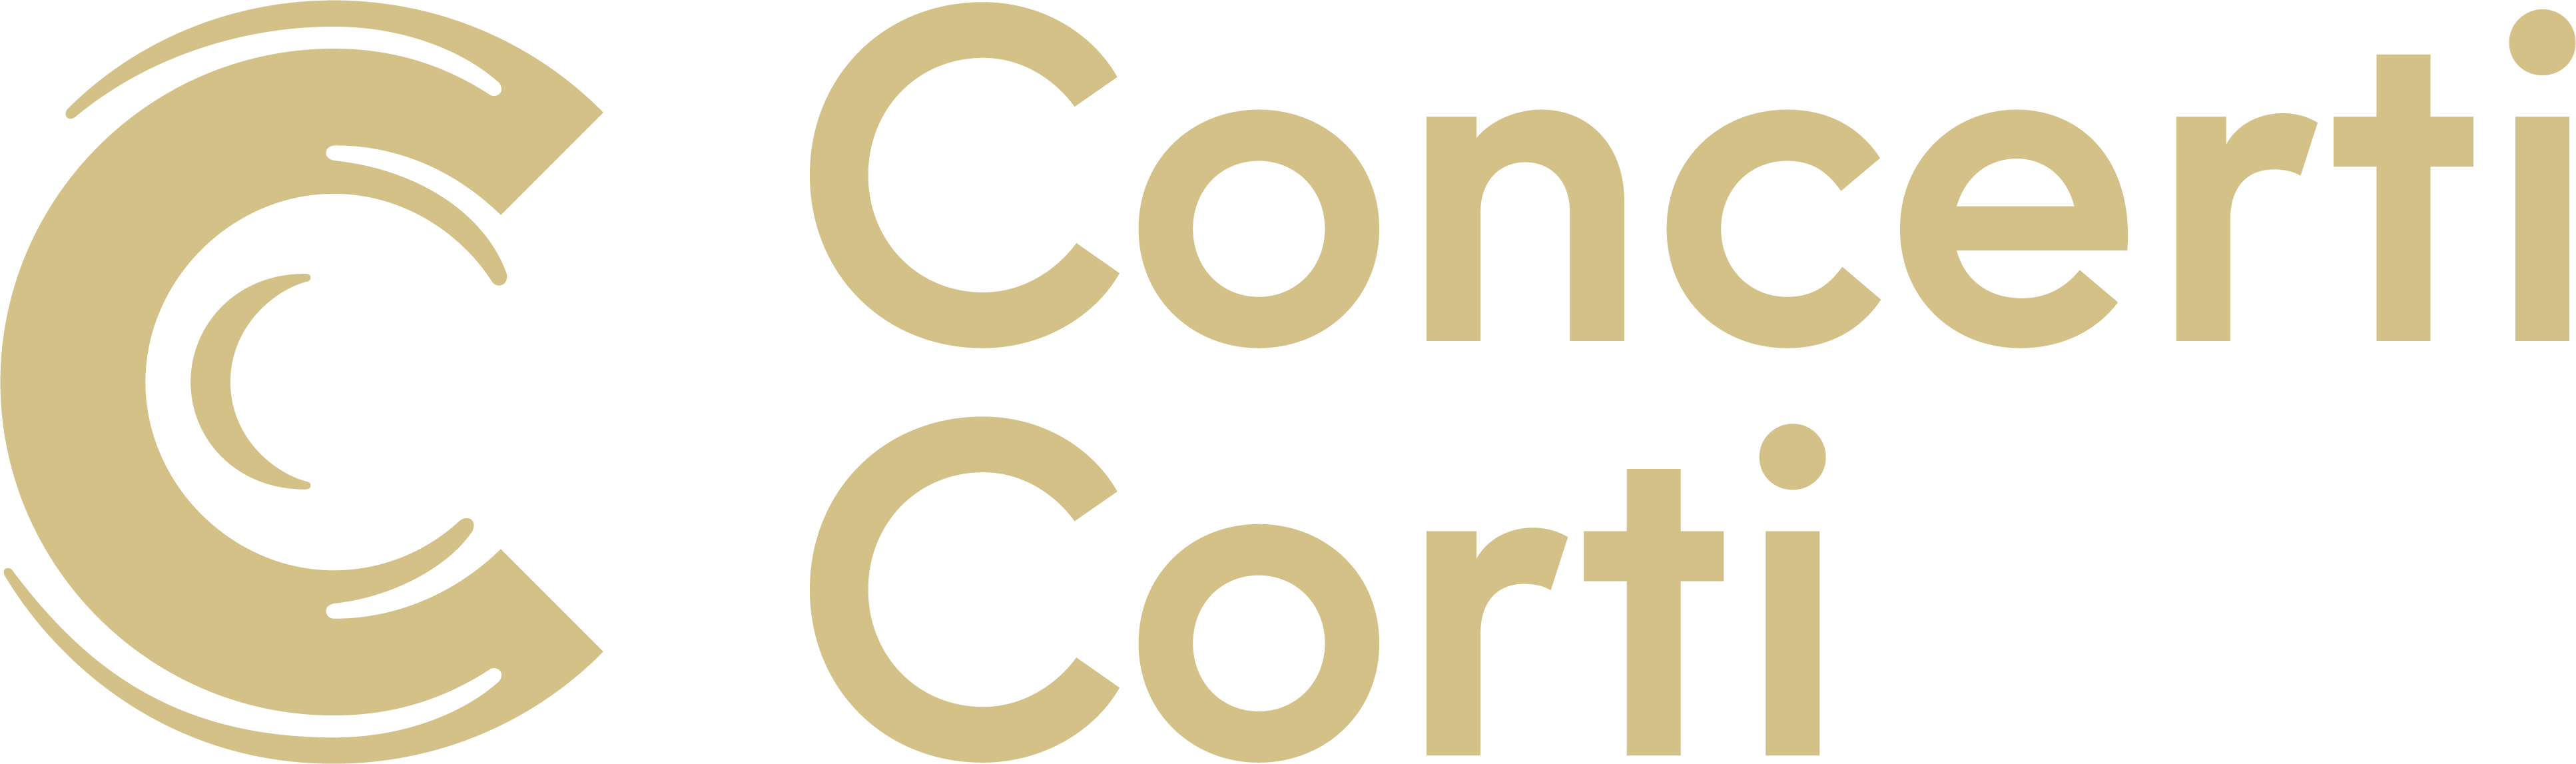 Concerti Corti Logo Gold